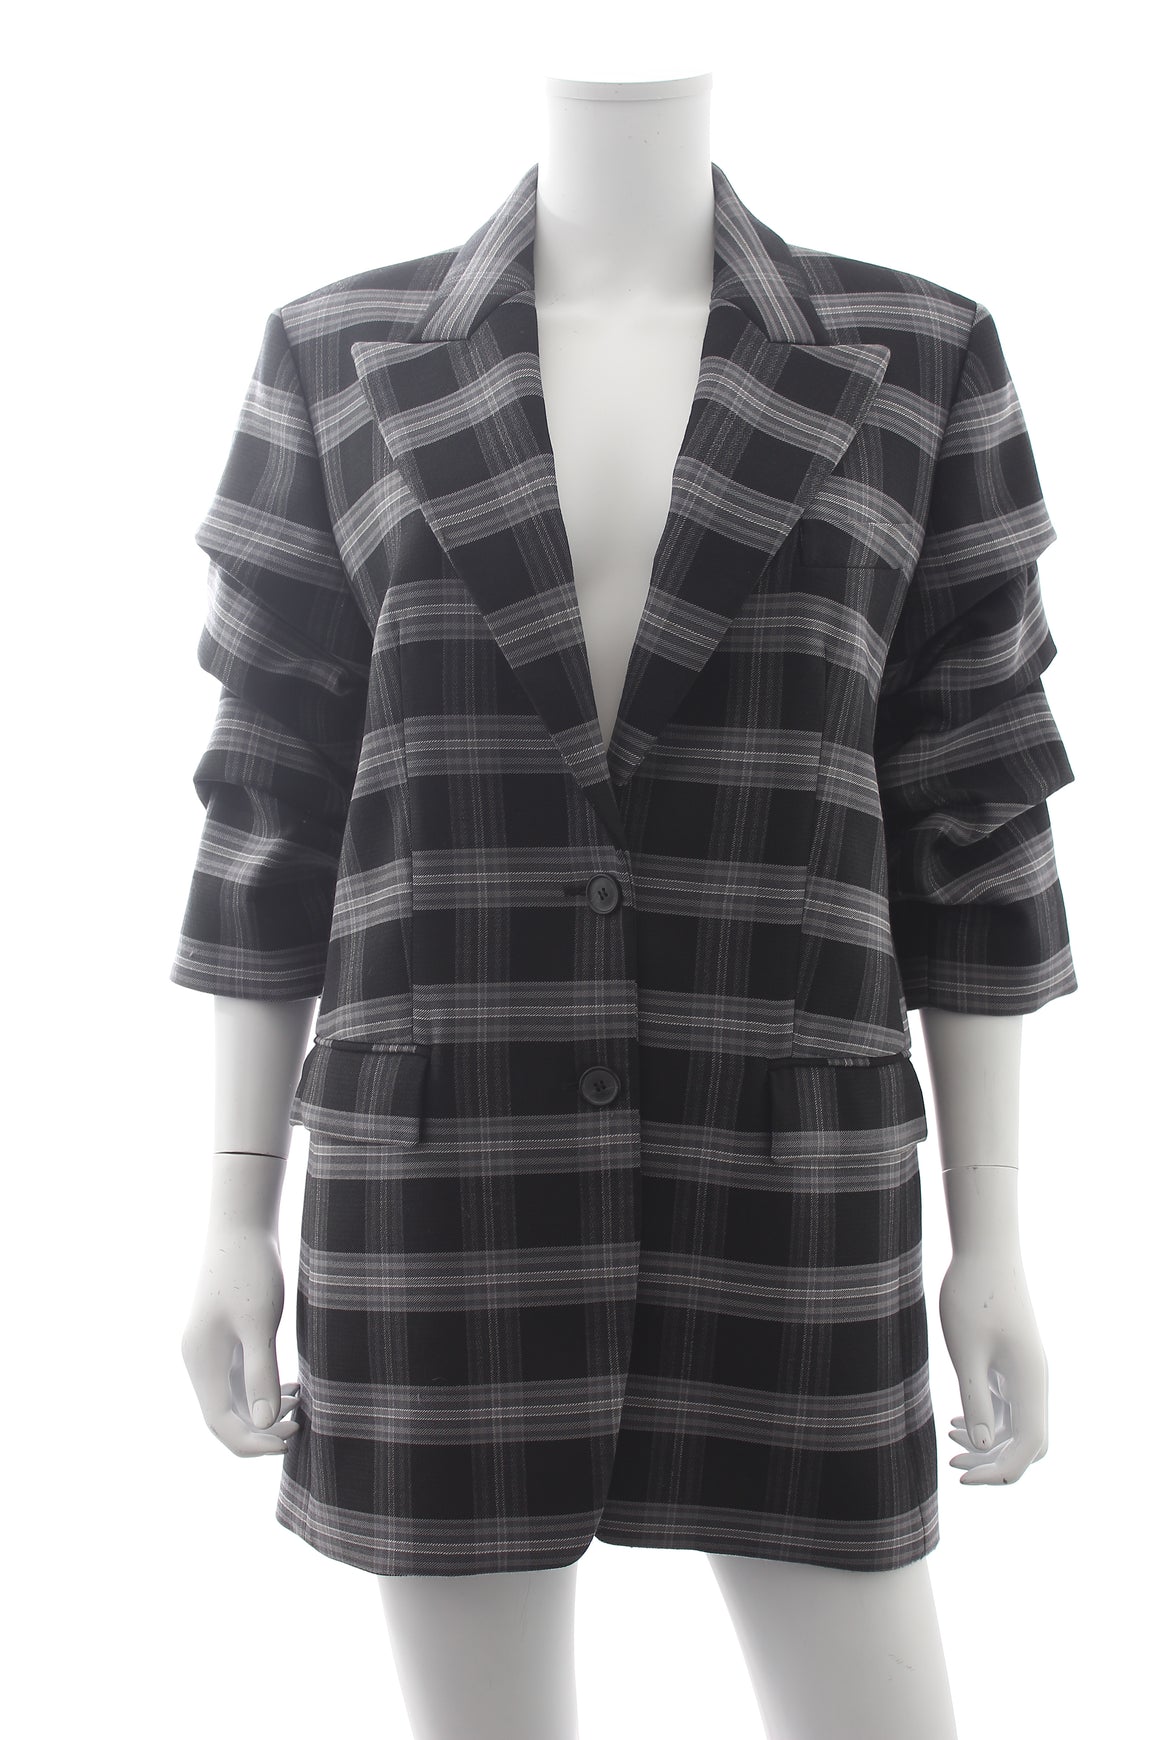 Michael Kors Collection Check Wool Gathered-Sleeve Blazer